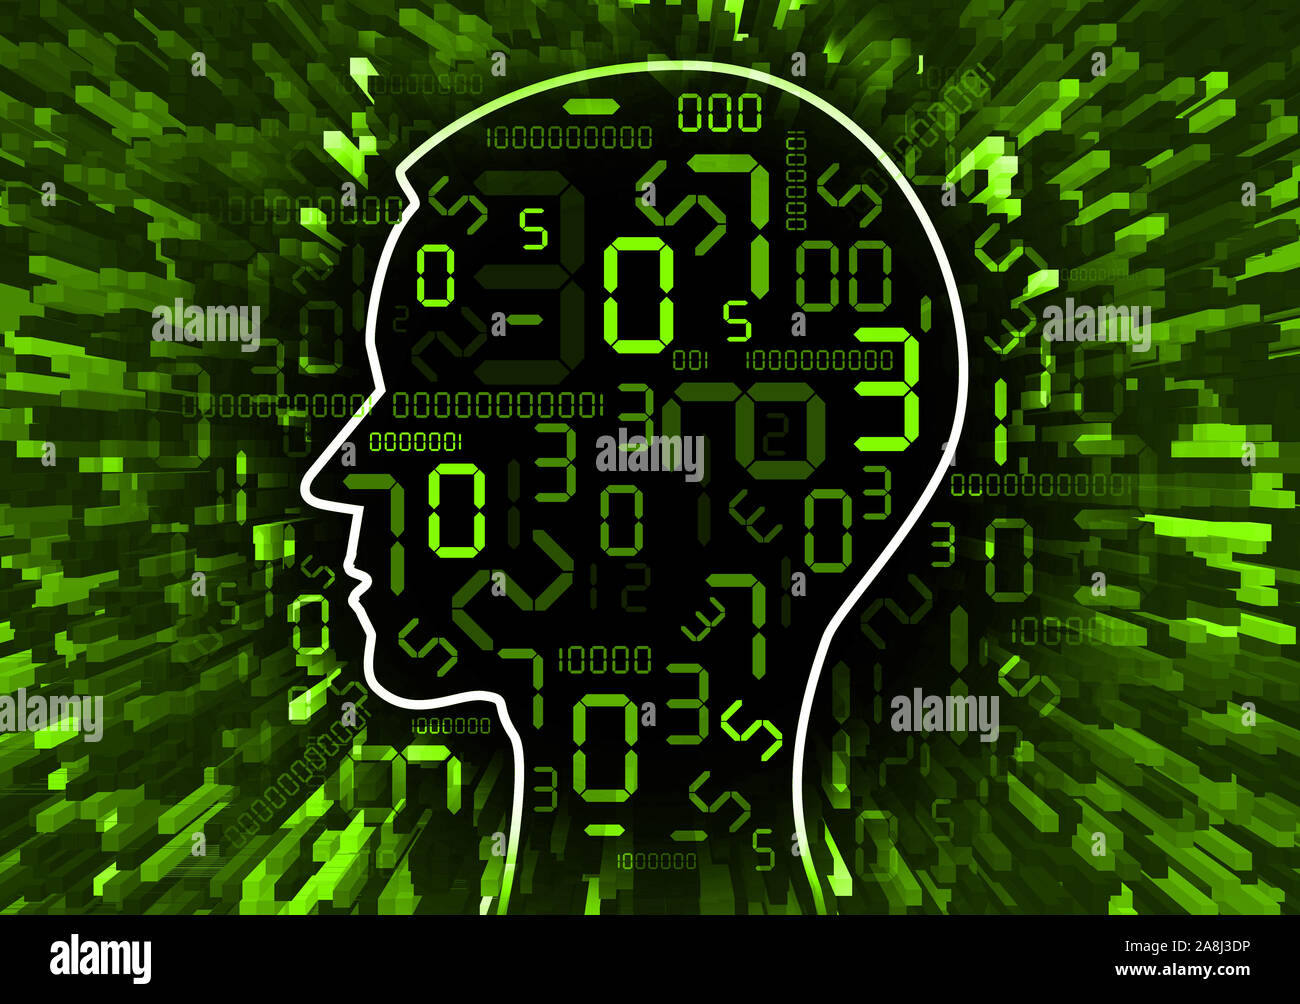 Tête humaine chaos de numérique numéros Human Head silhouette aux numéros numérique sur fond vert. Concept pour la technologie numérique. Banque D'Images